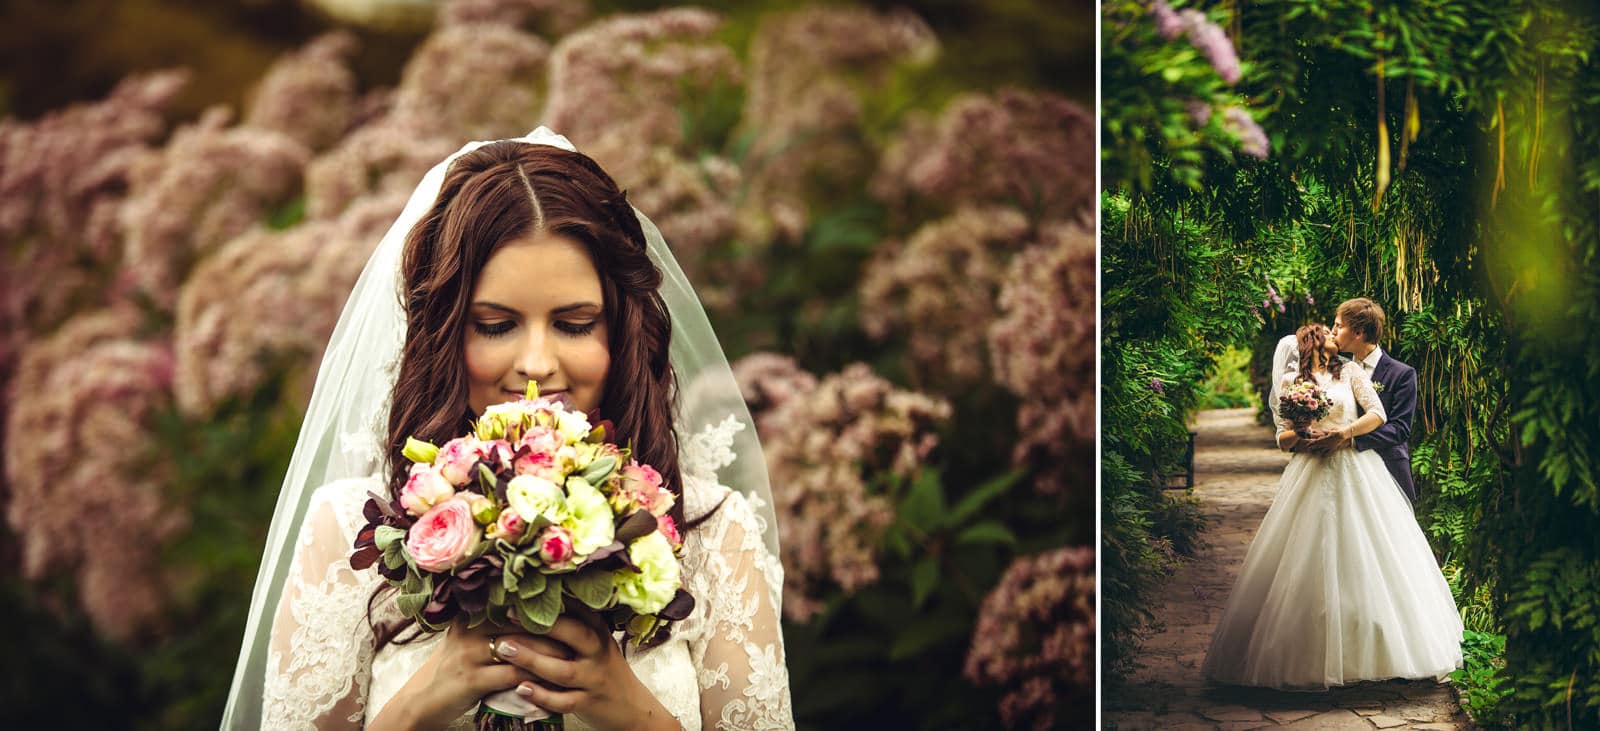 Verträumtes Hochzeitsbild mit Blumen aus dem Park.